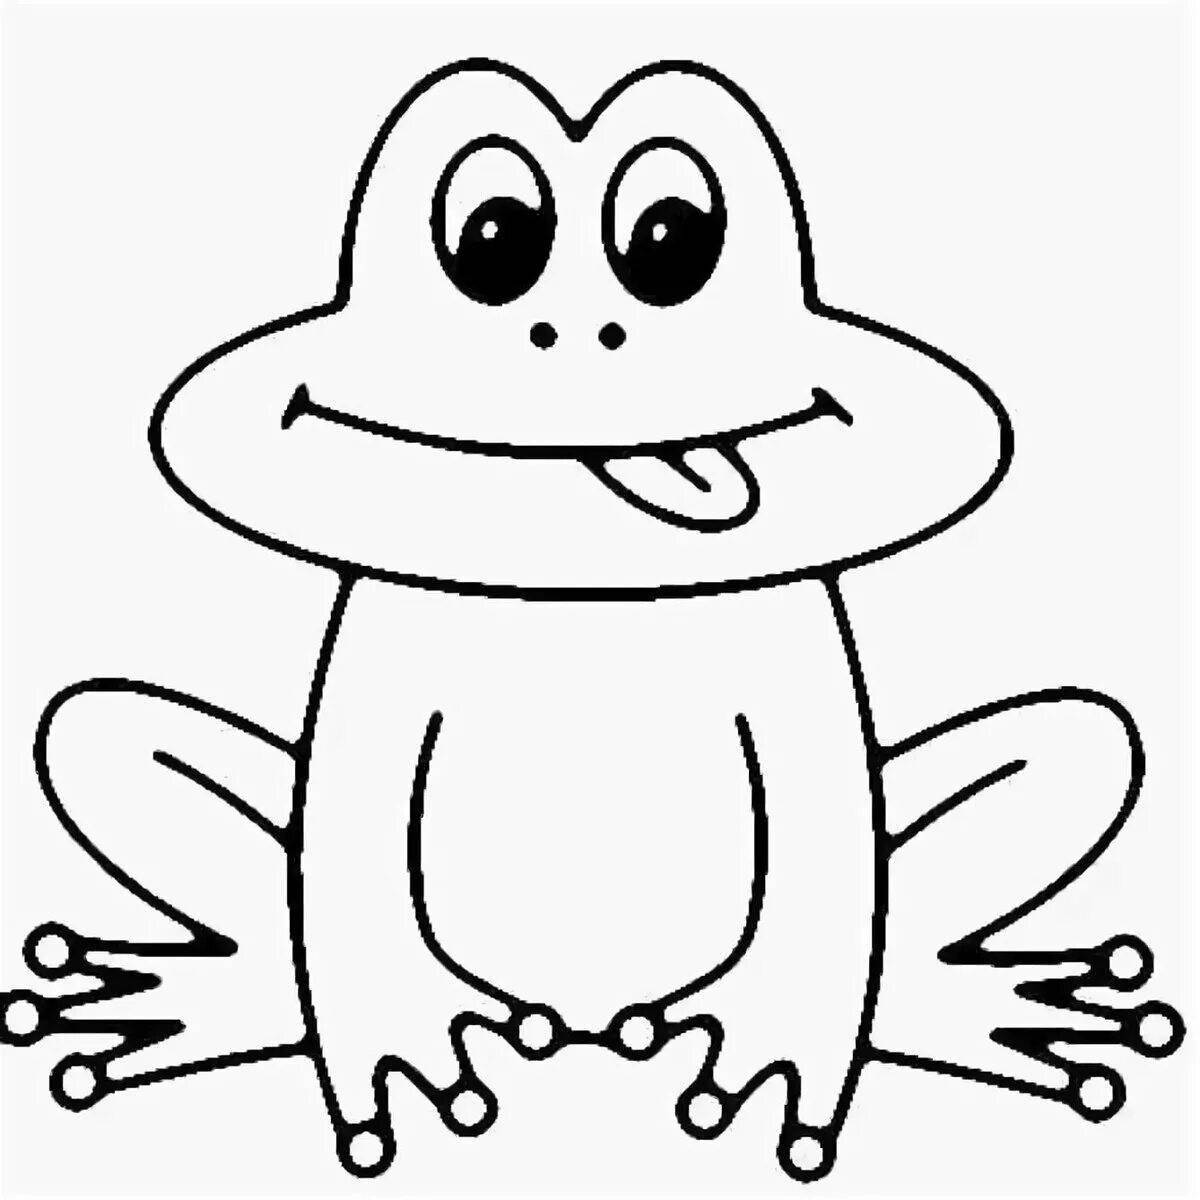 Радостный рисунок лягушки для детей